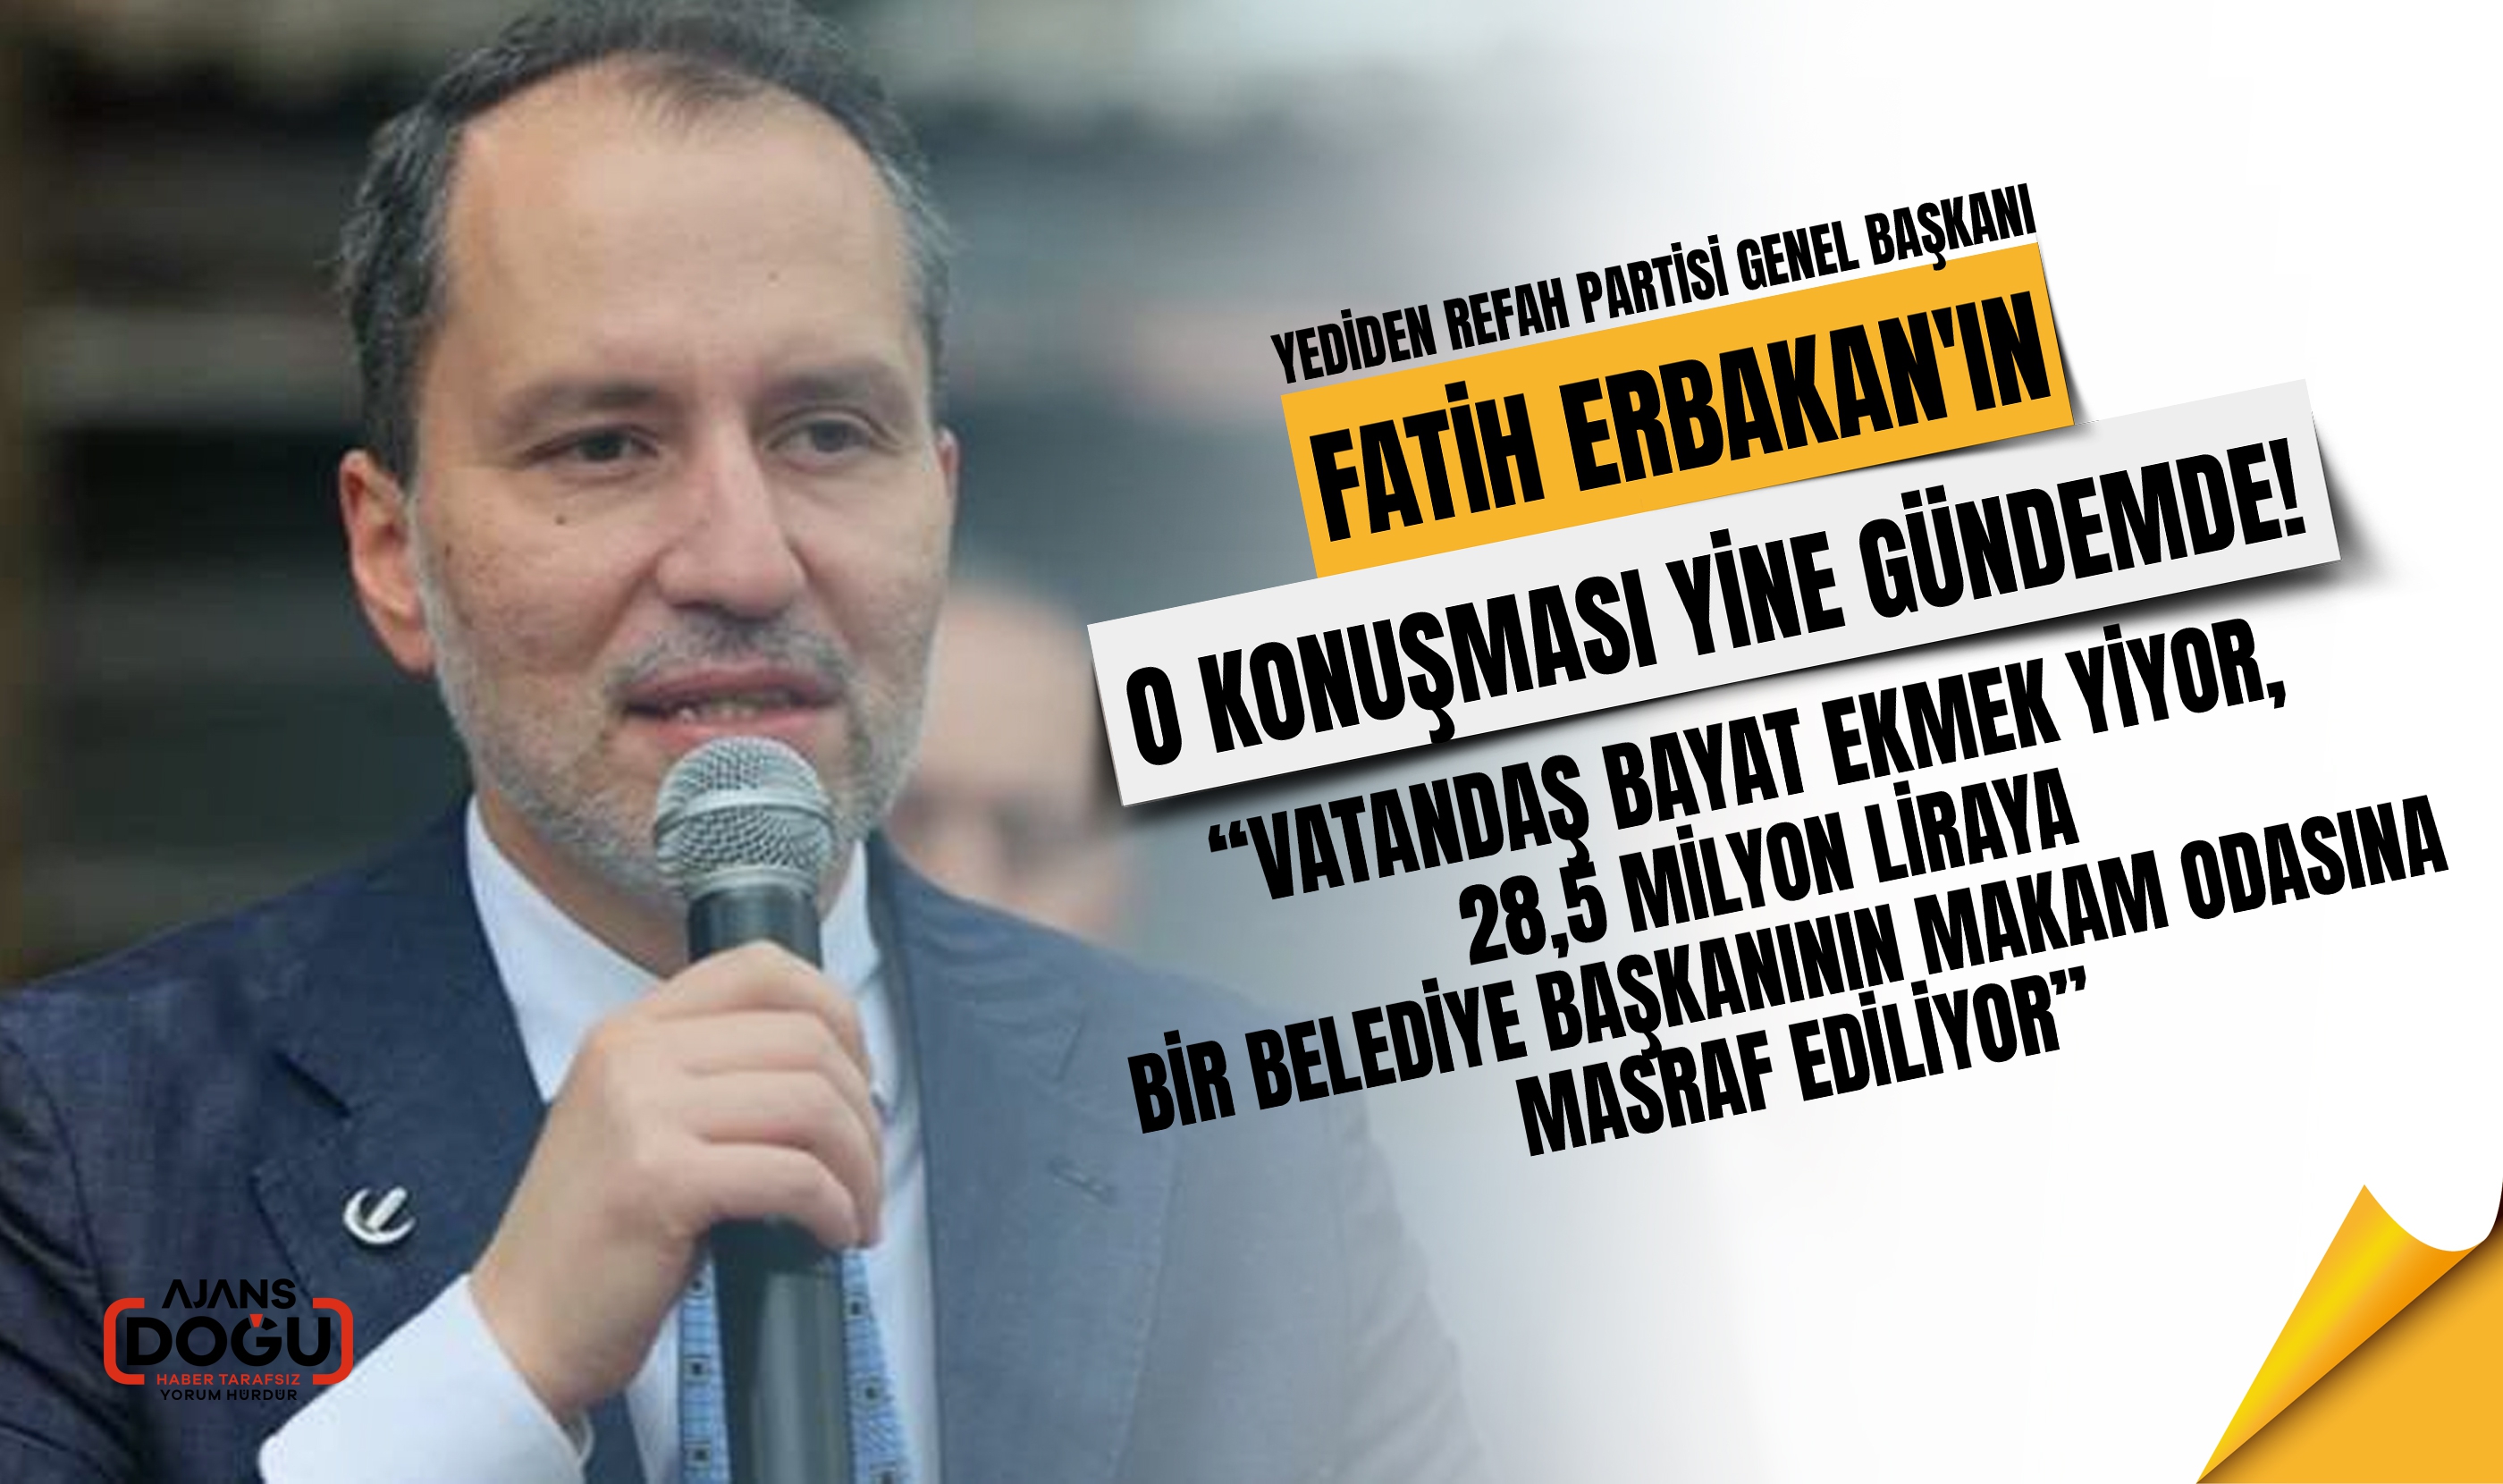 Fatih Erbakan'ın arşiv konuşması gündem oldu